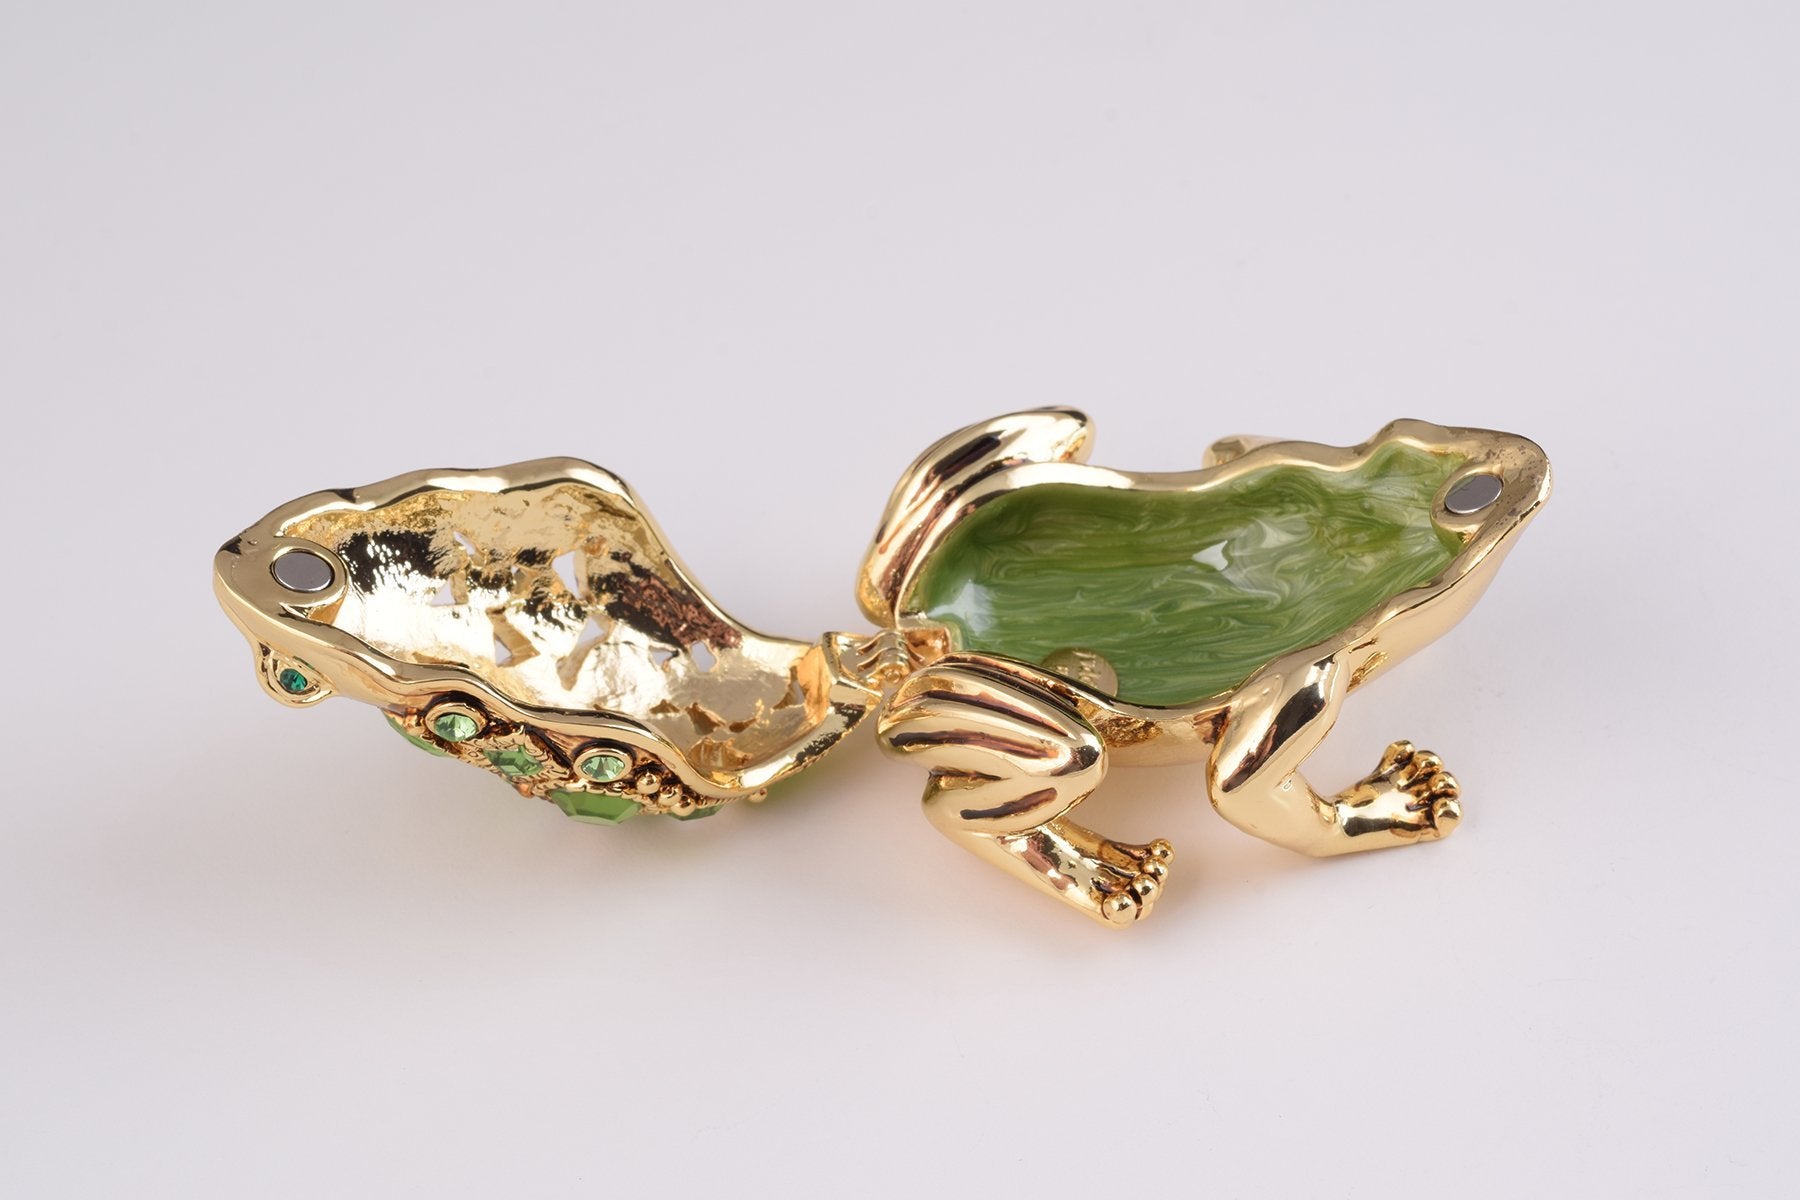 Keren Kopal Gold and Green Frog  44.00